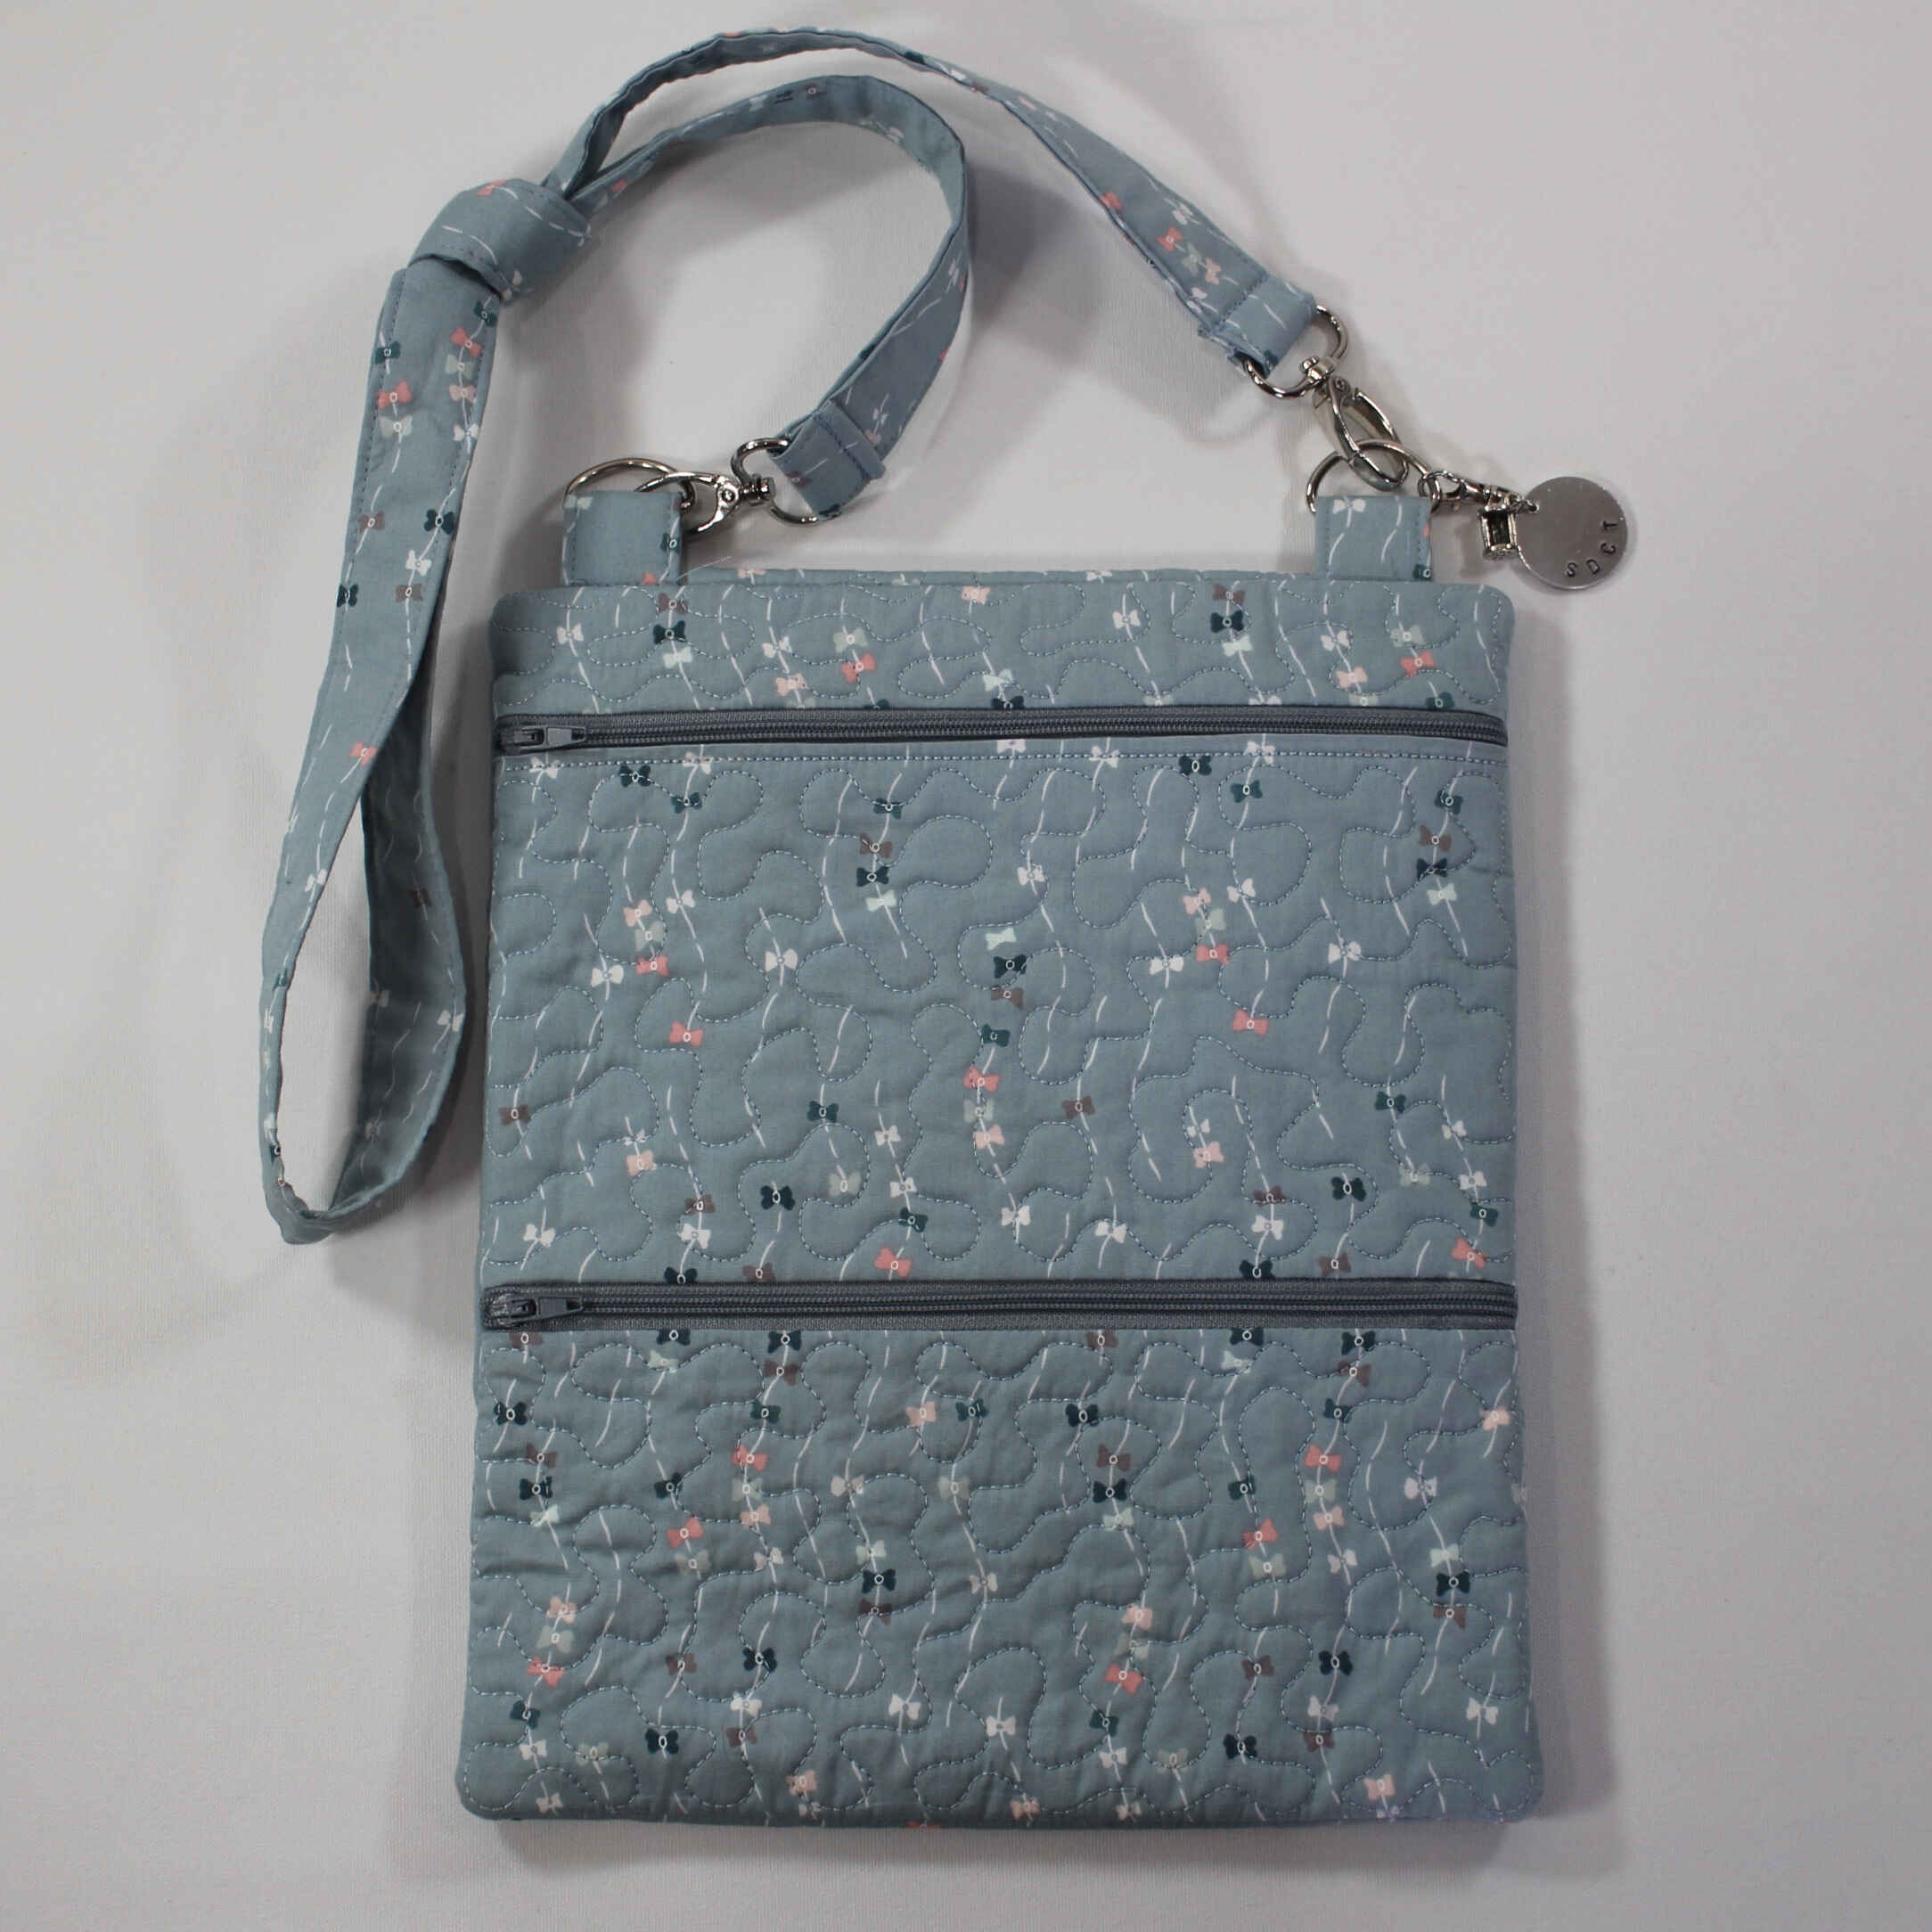 Handmade Bags - "Blue Bows Purse"